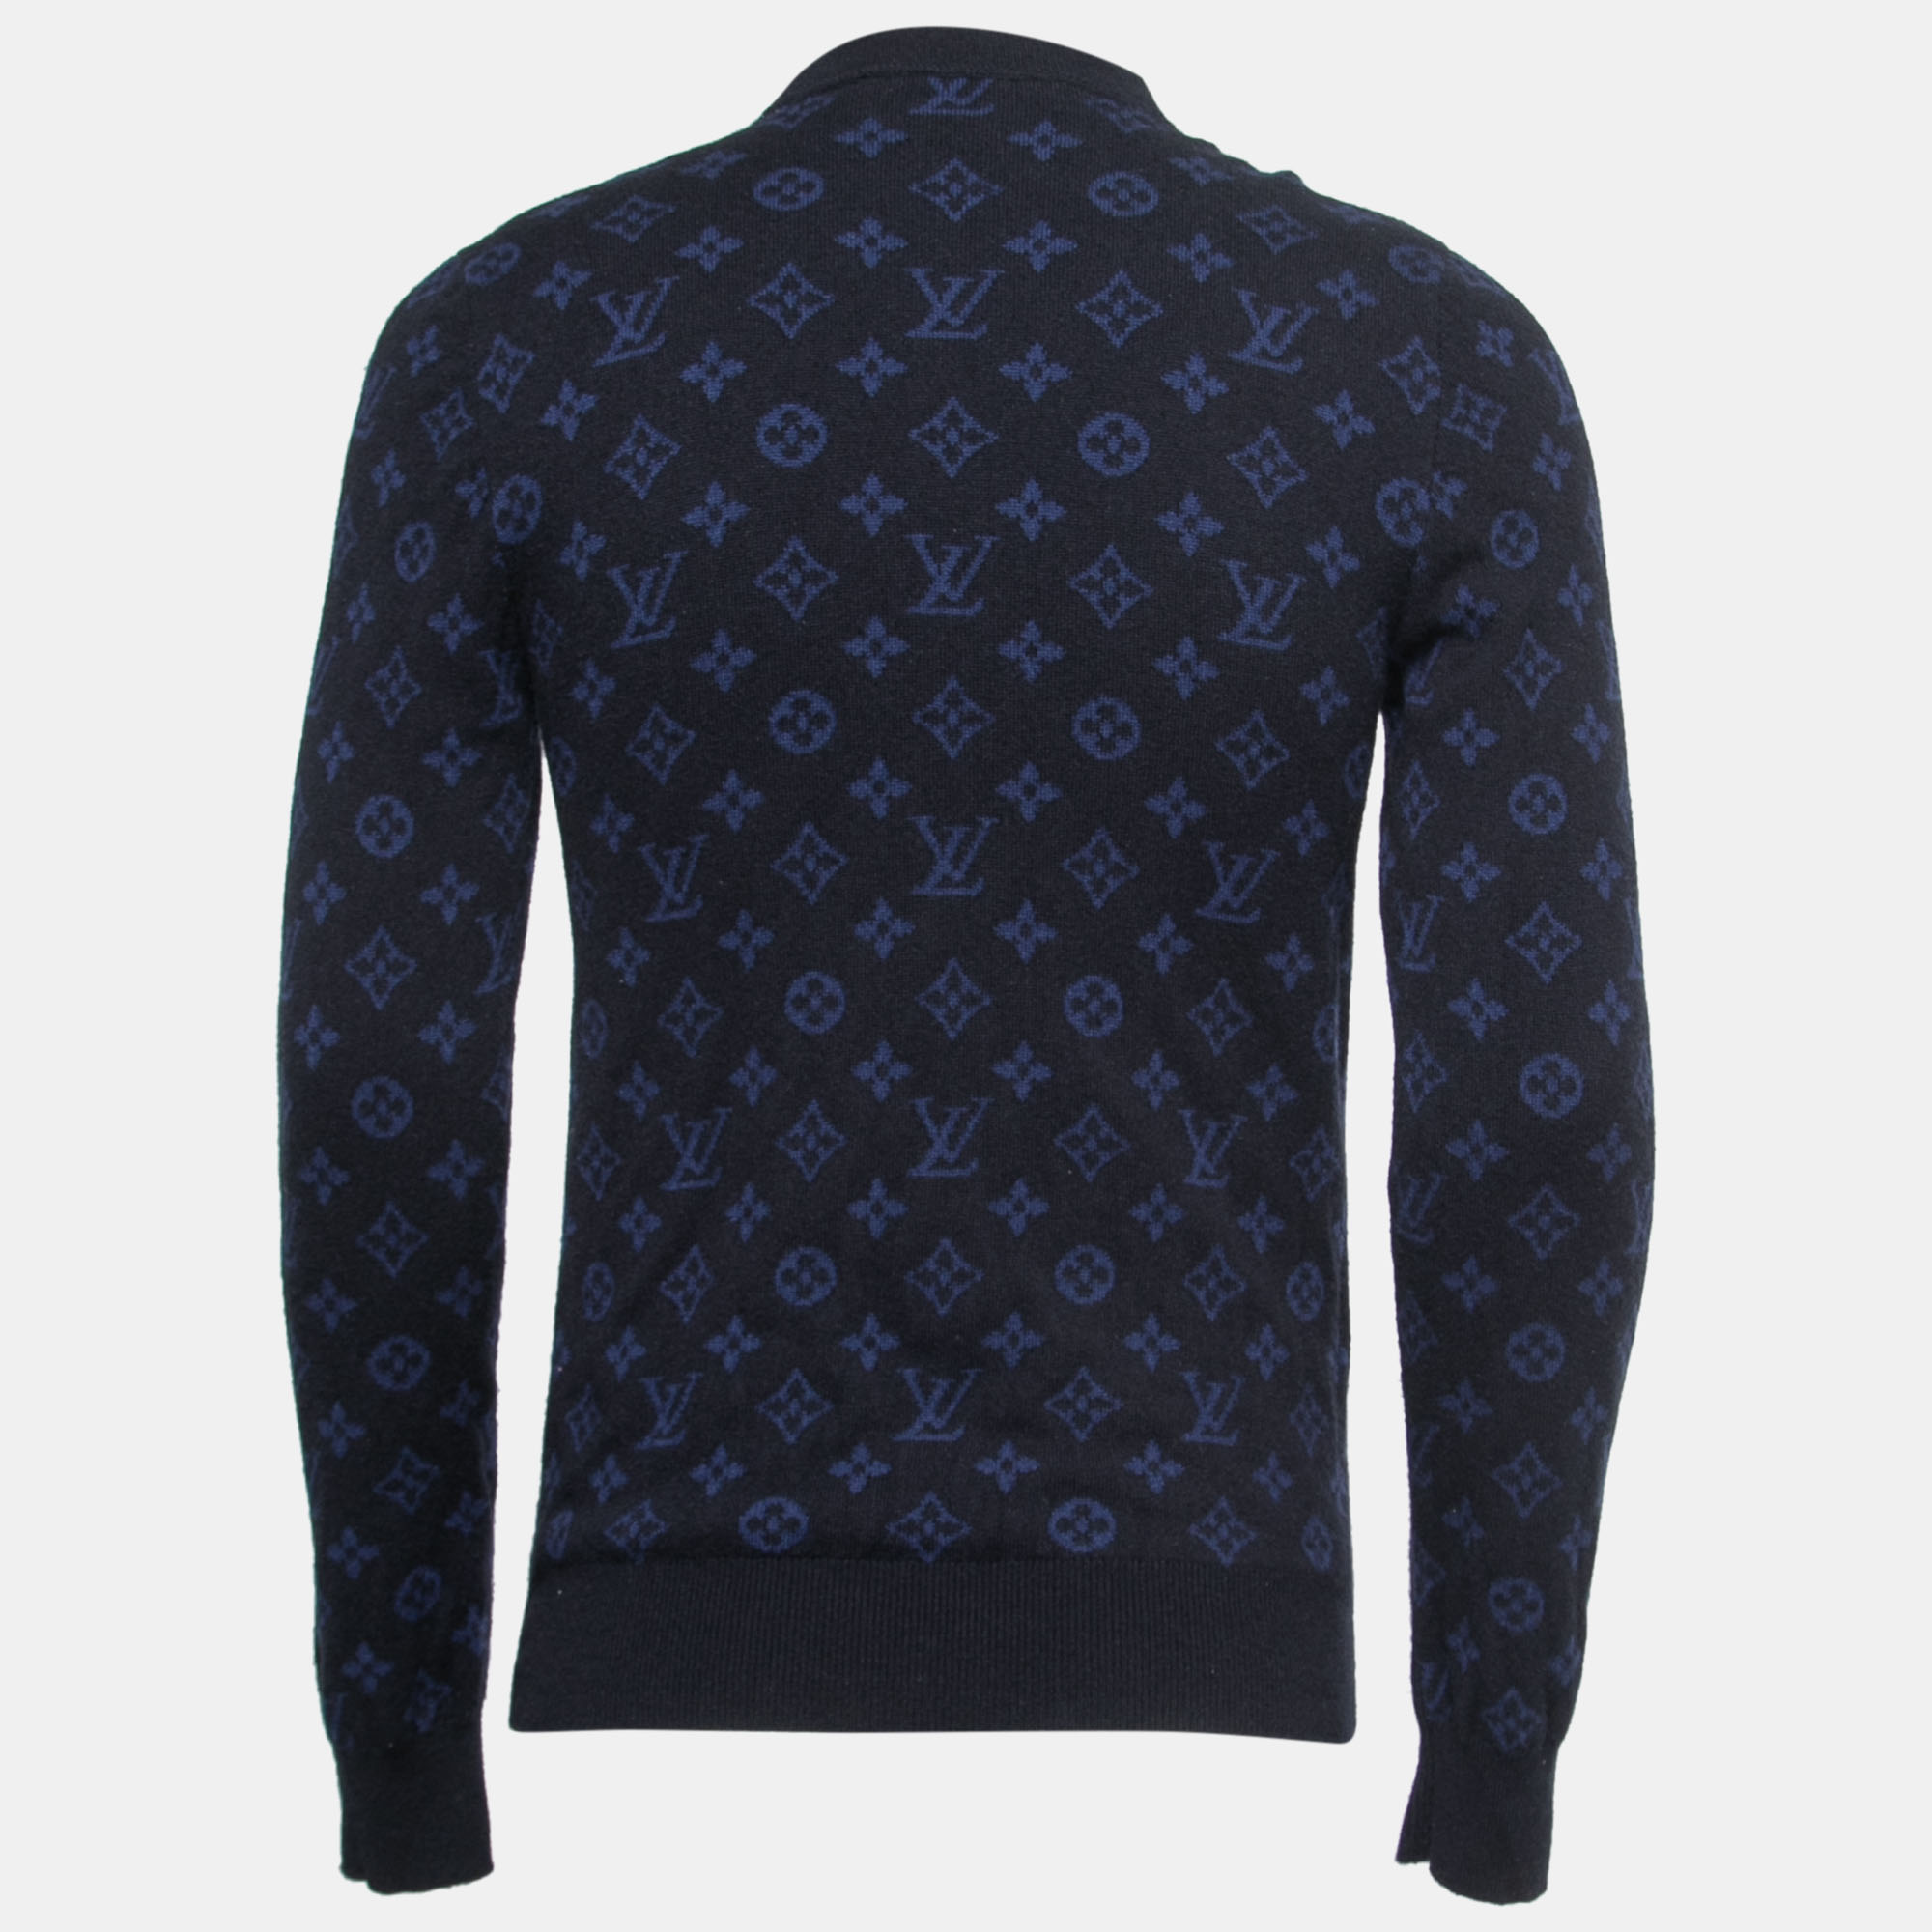 

Louis Vuitton Black & Blue Monogram Cashmere Sweater